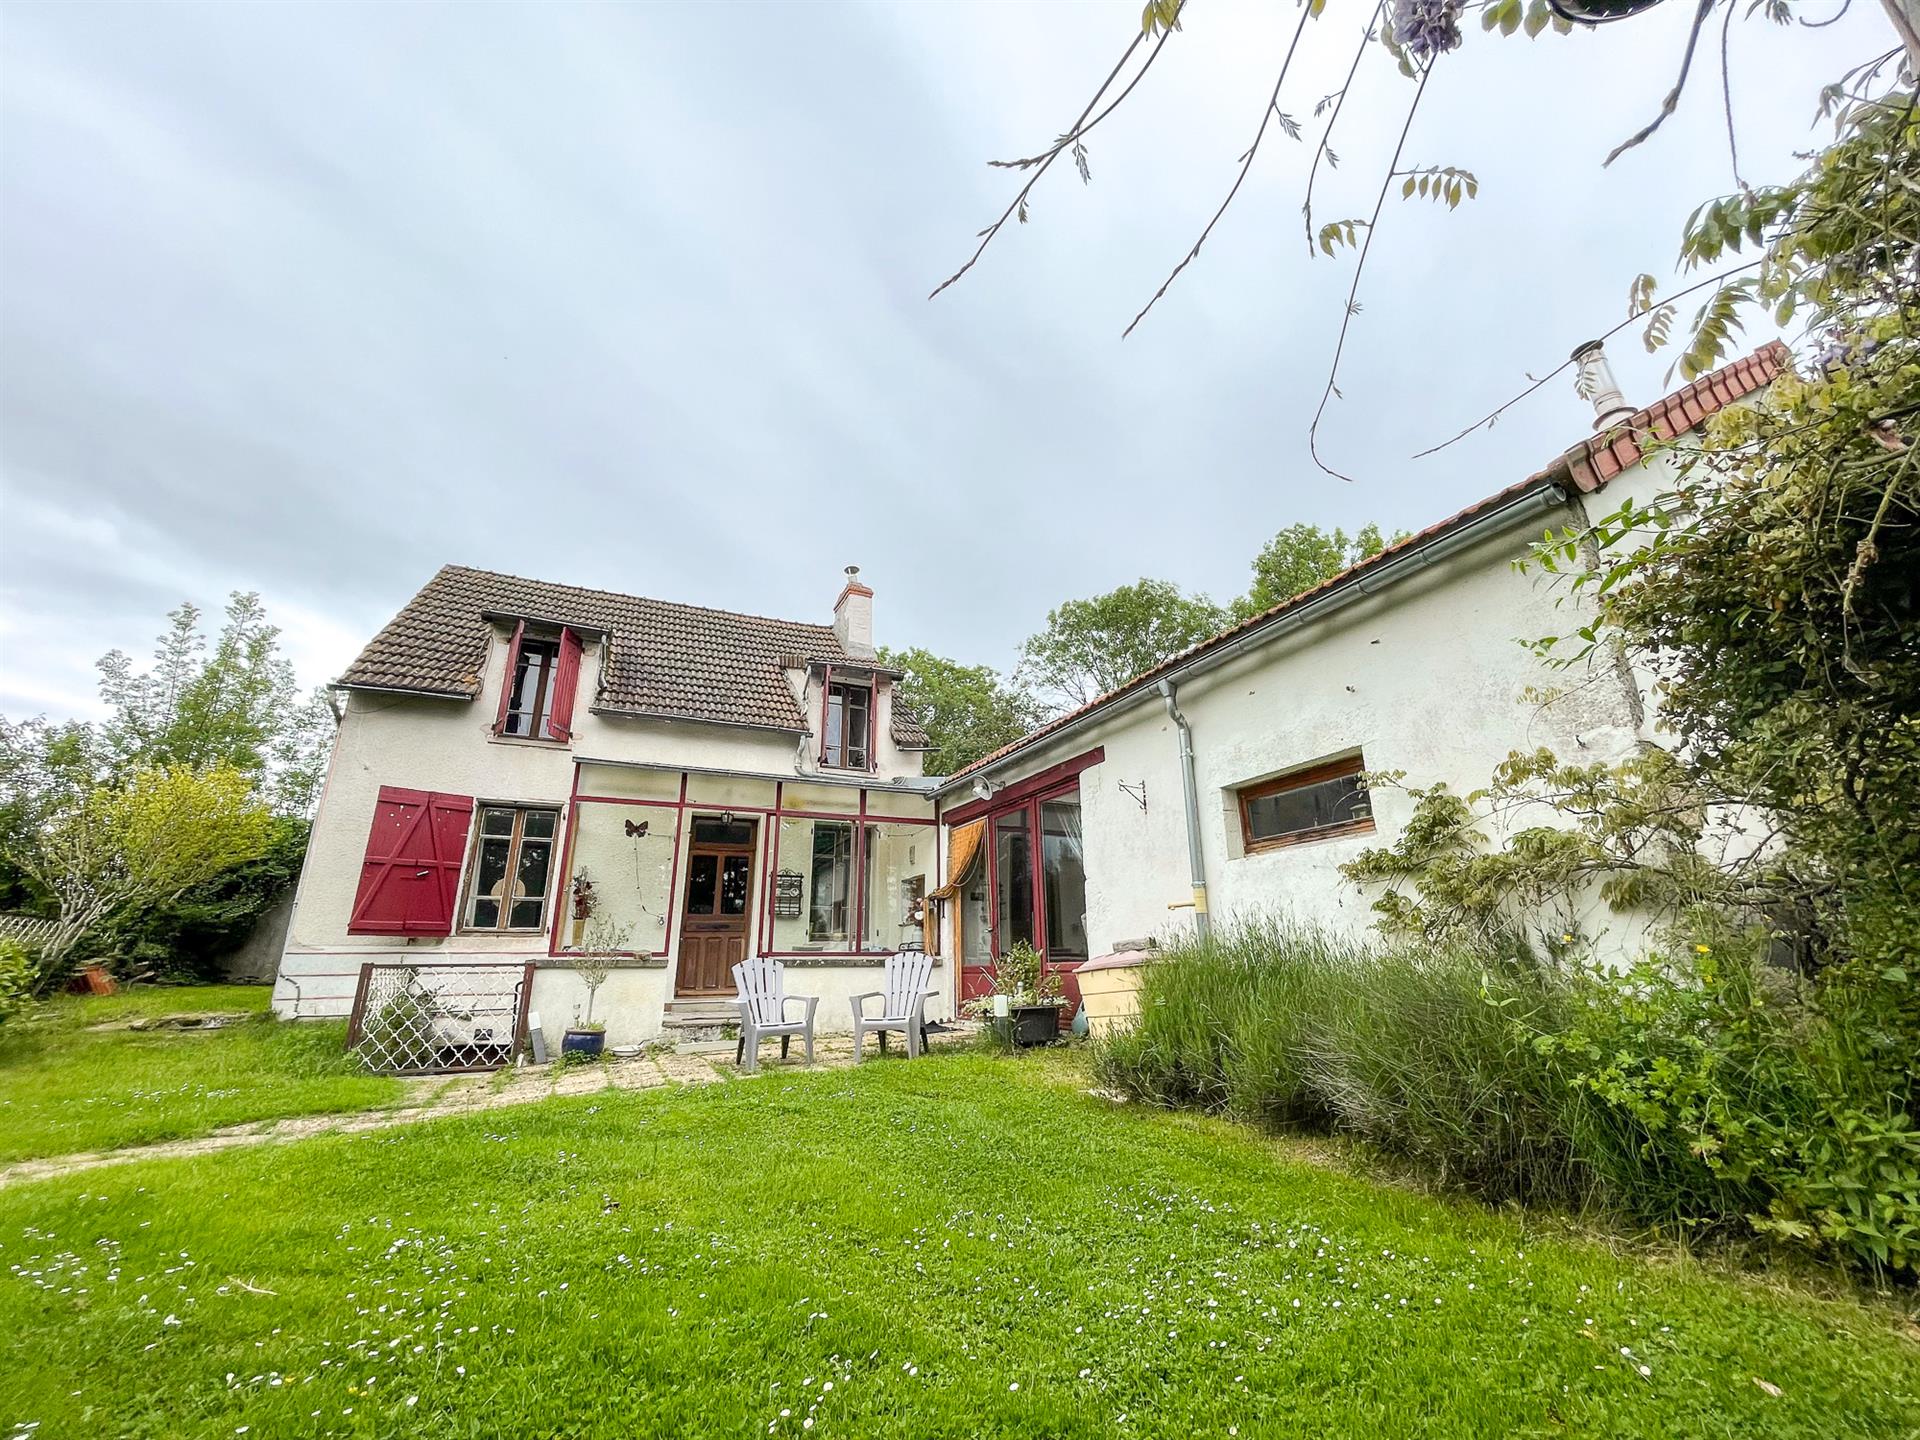 A vendre, belle maison avec jardin autour, dans village sympathique, Allier, Auvergne.